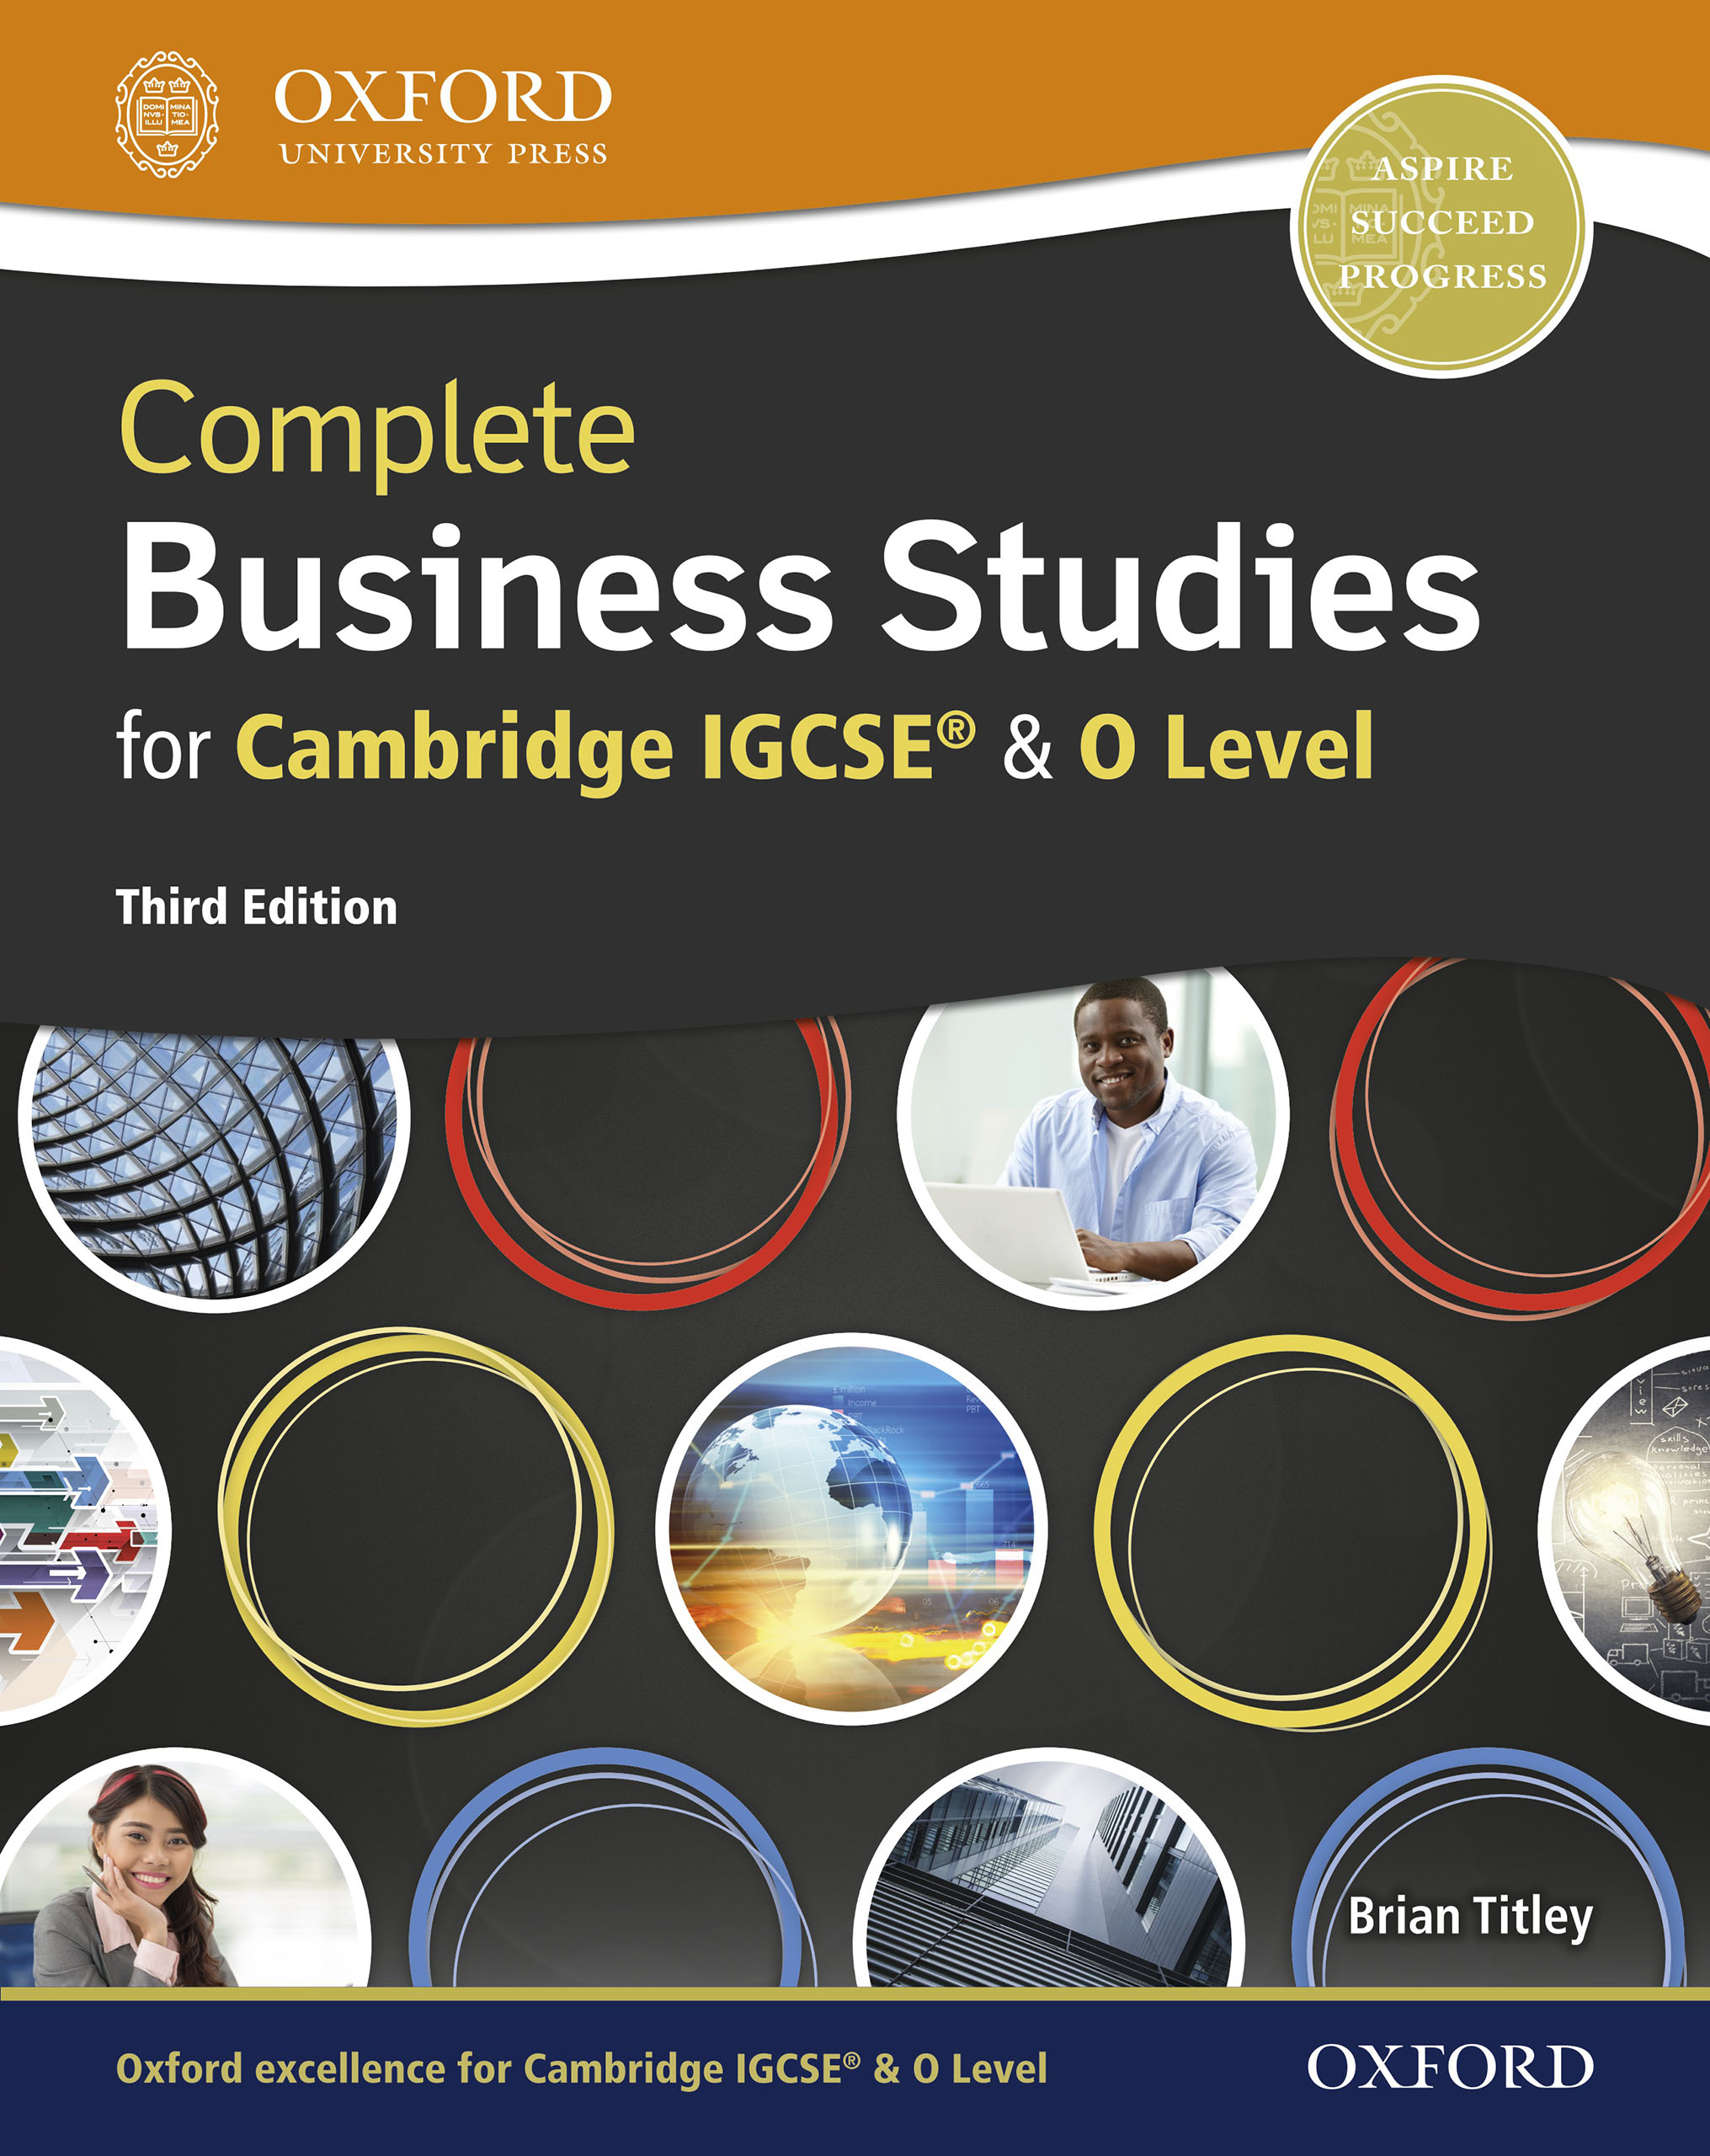 igcse business studies coursework